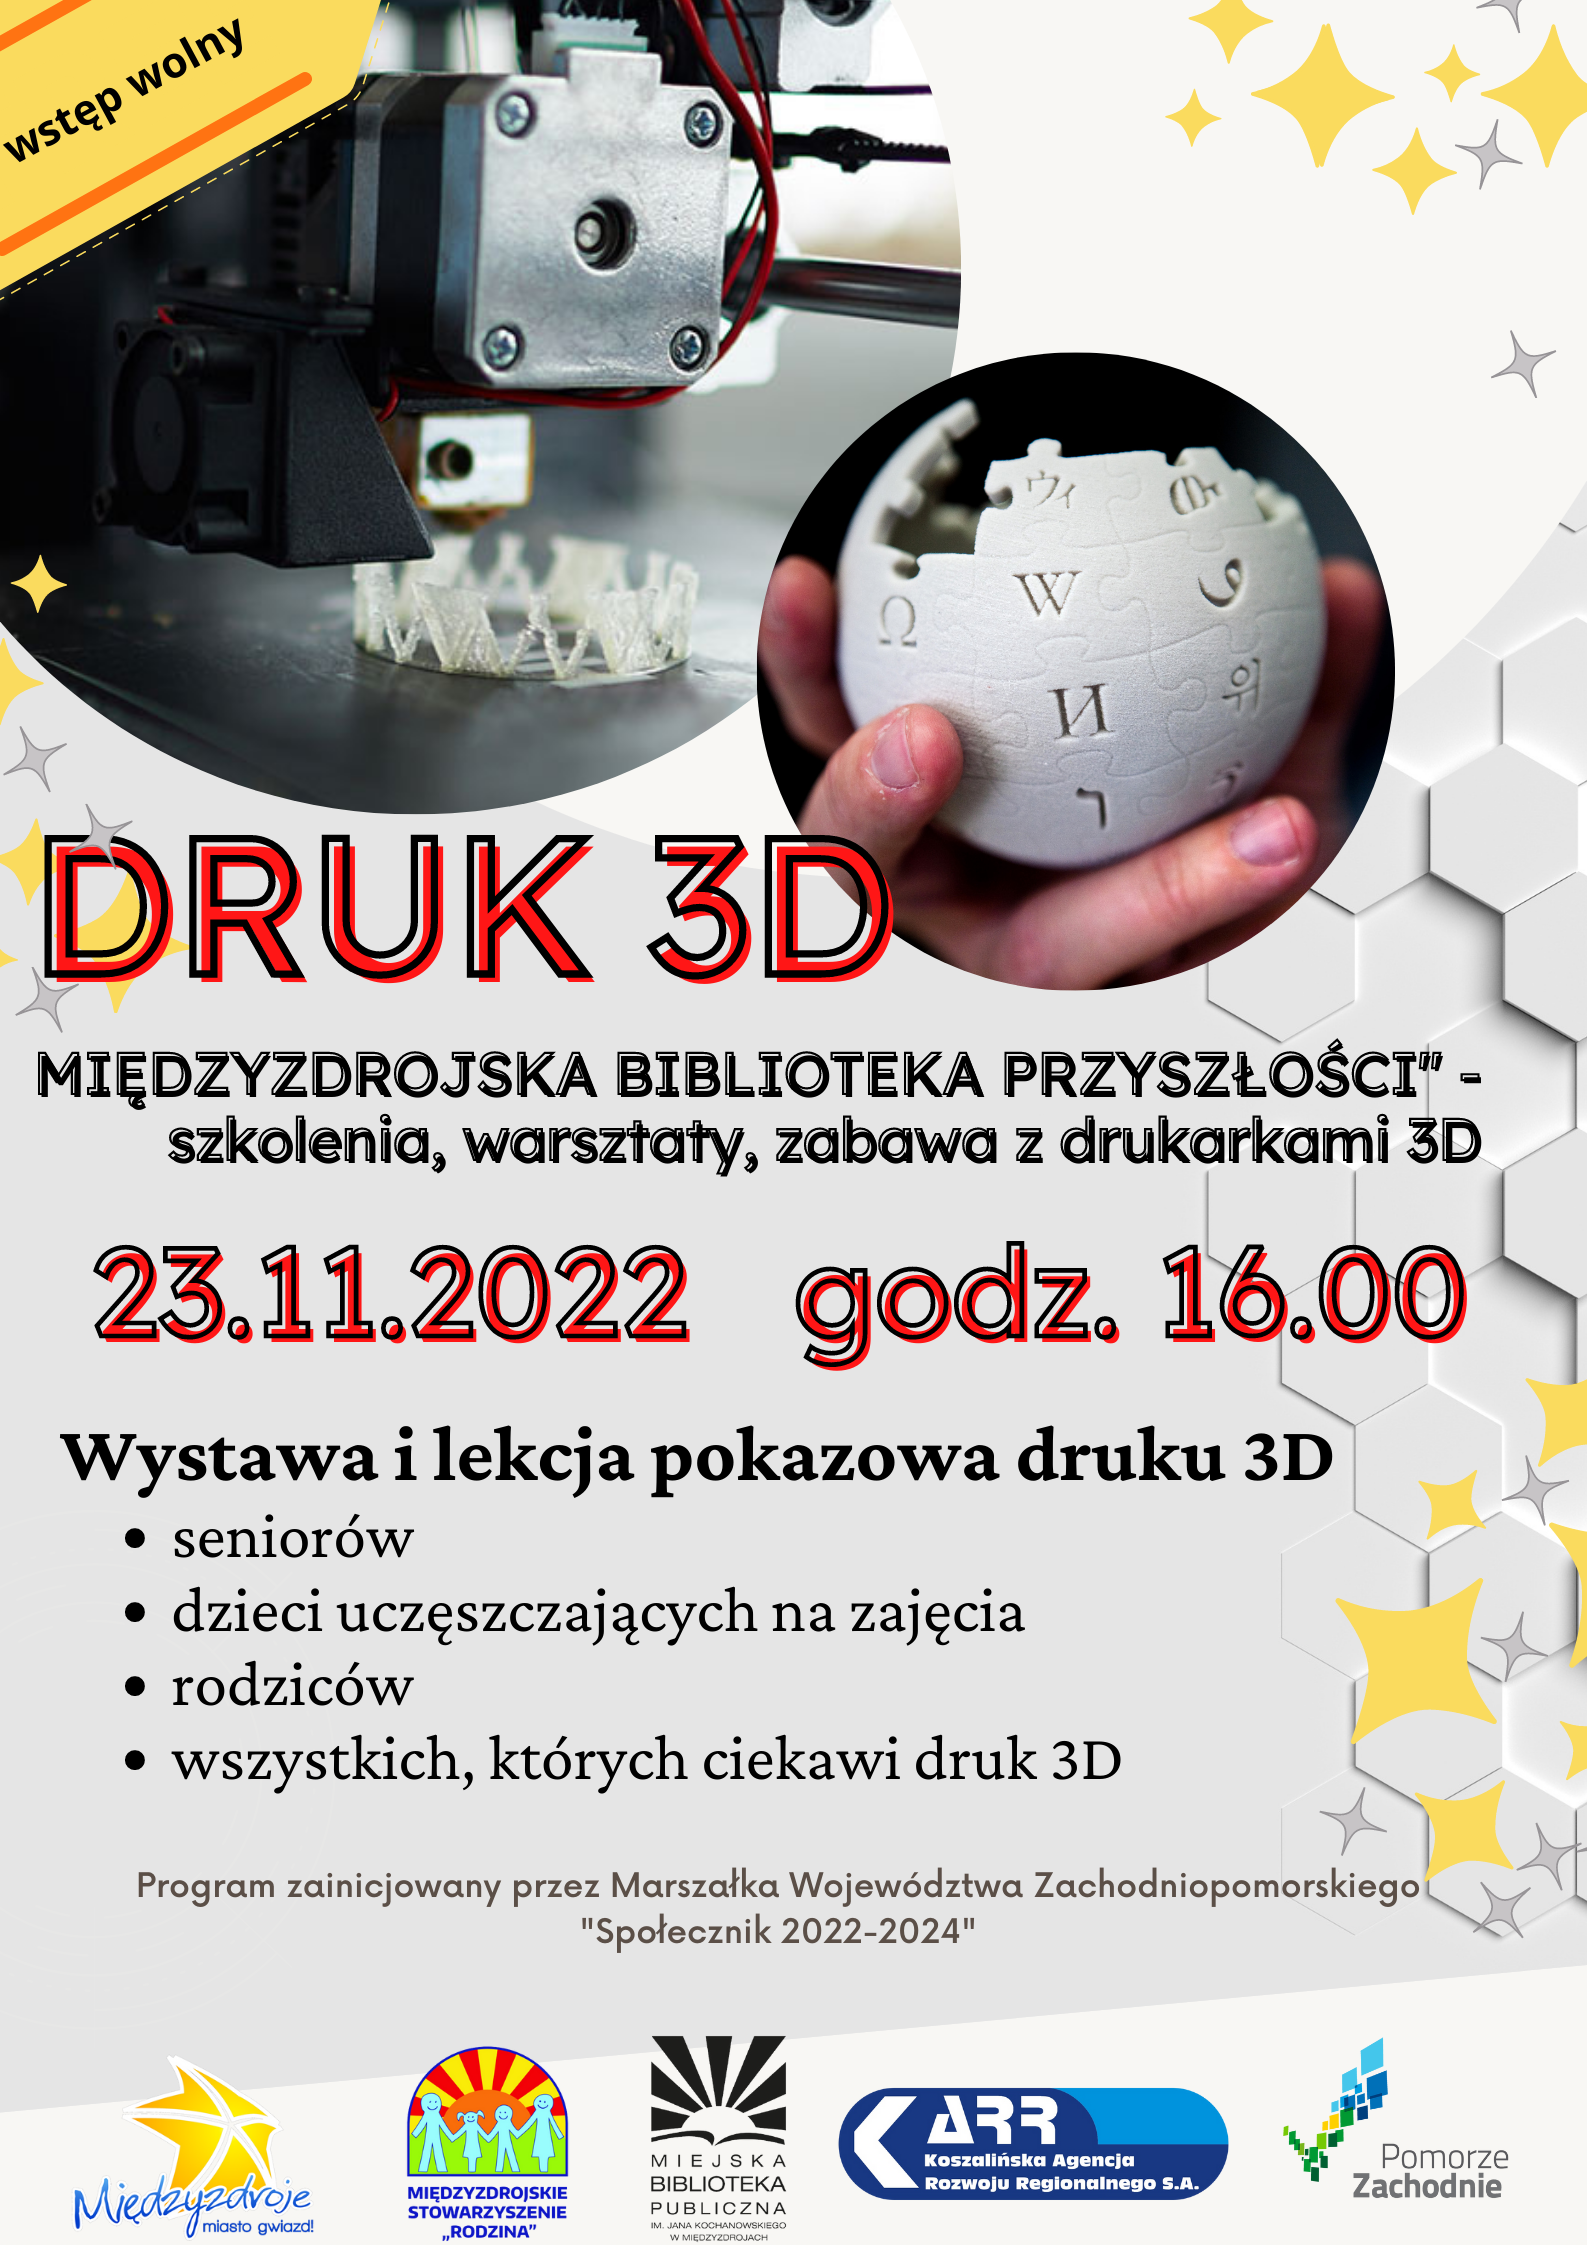 Druk 3D - wystawa i lekcja pokazowa 23 listopada 2022 r. - zapowiedź